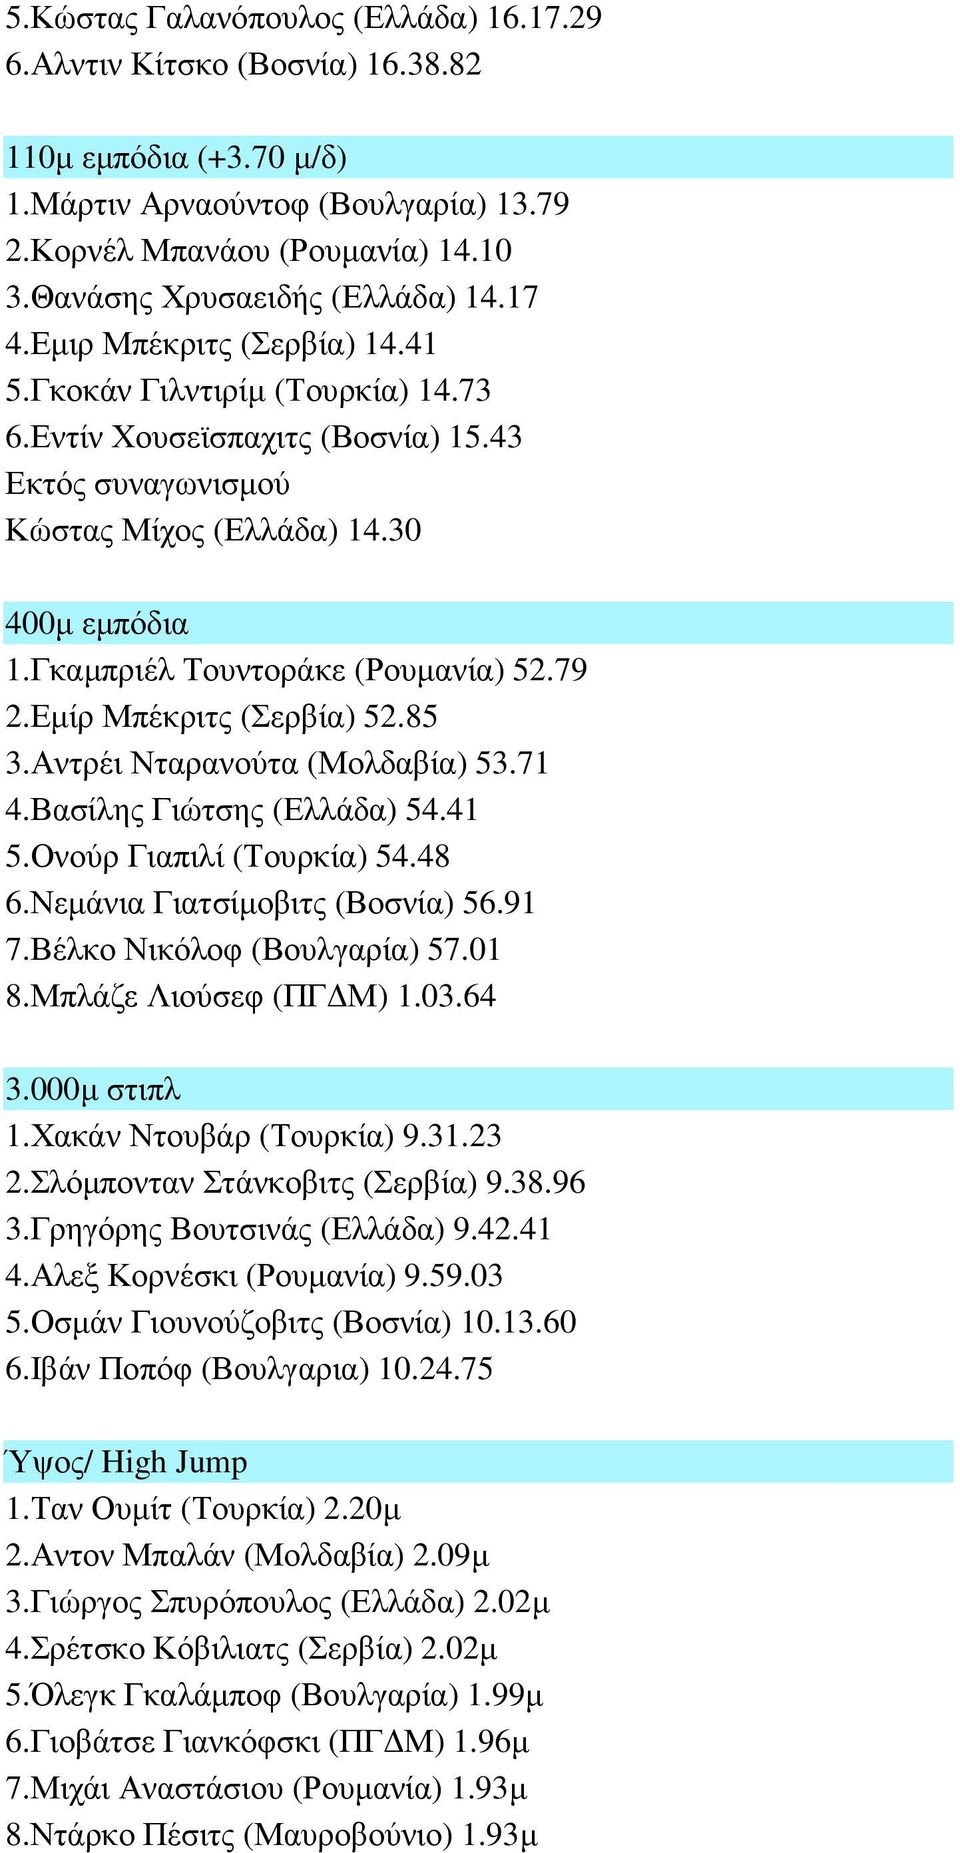 Γκαµπριέλ Τουντοράκε (Ρουµανία) 52.79 2.Εµίρ Μπέκριτς (Σερβία) 52.85 3.Αντρέι Νταρανούτα (Μολδαβία) 53.71 4.Βασίλης Γιώτσης (Ελλάδα) 54.41 5.Ονούρ Γιαπιλί (Τουρκία) 54.48 6.